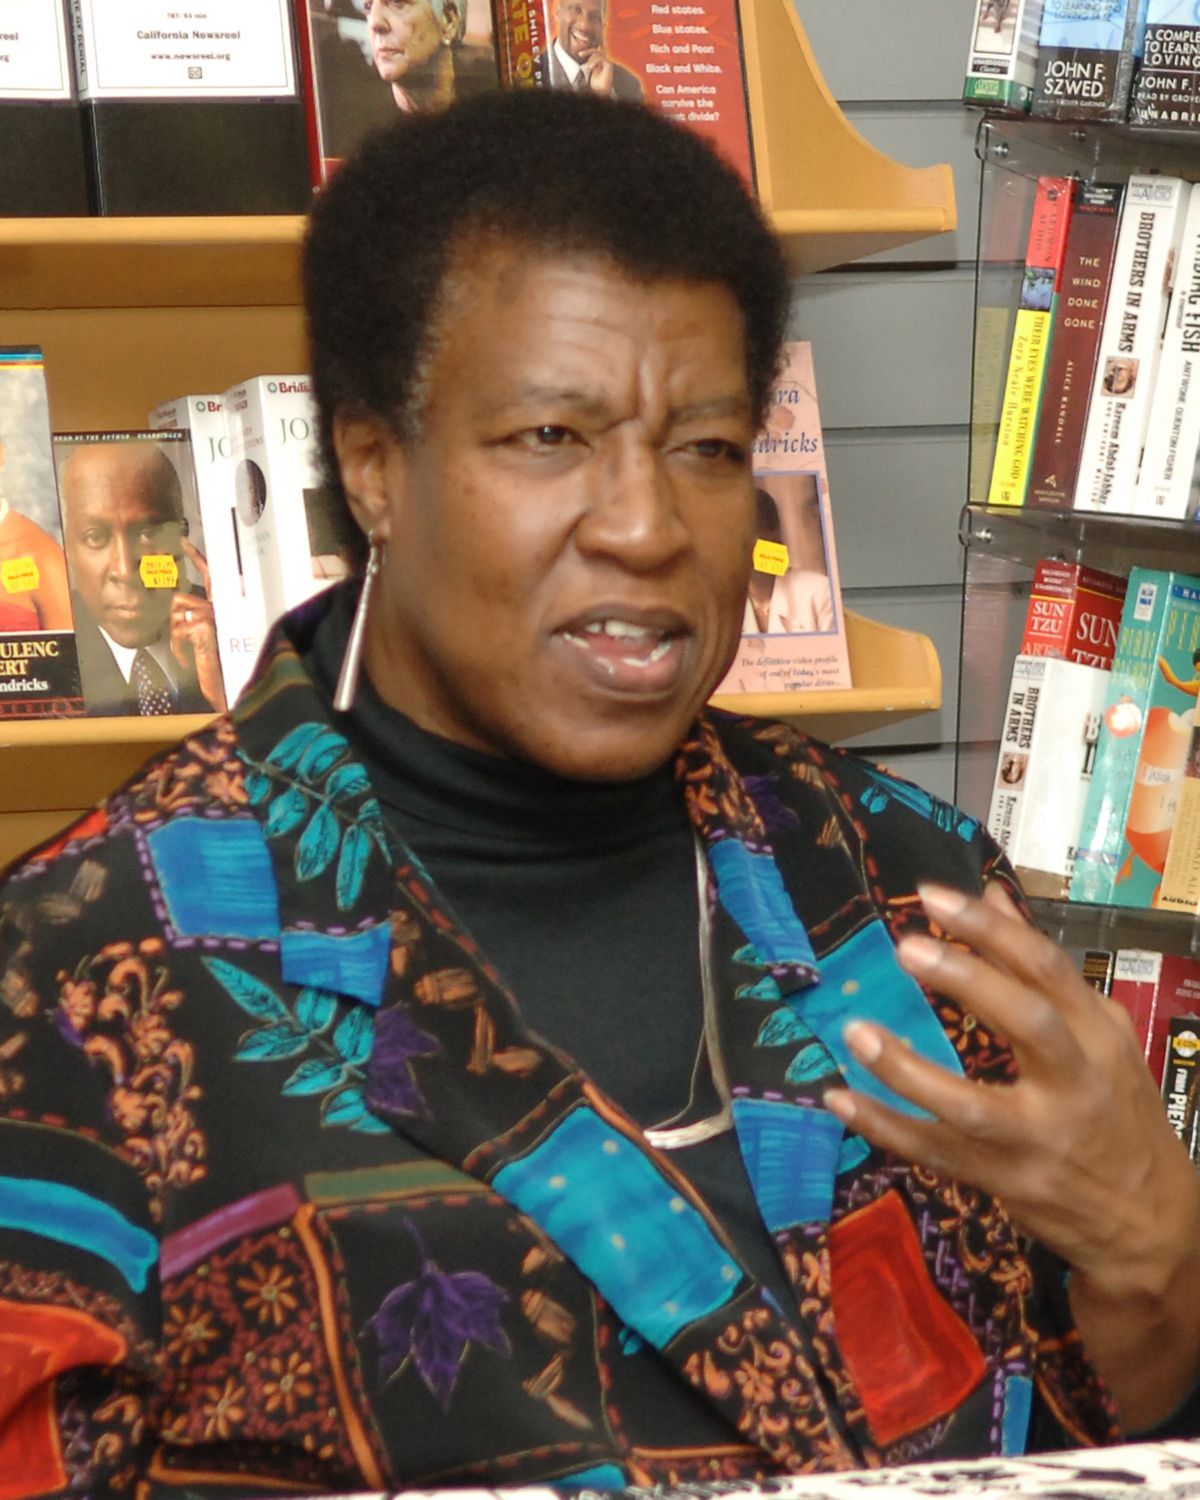 Octavia E. Butler negli anni '90, che indossa una camicia fantasia con disegni di foglie d'albero e lunghi orecchini di metallo, viene colta a metà frase durante una lettura in una libreria